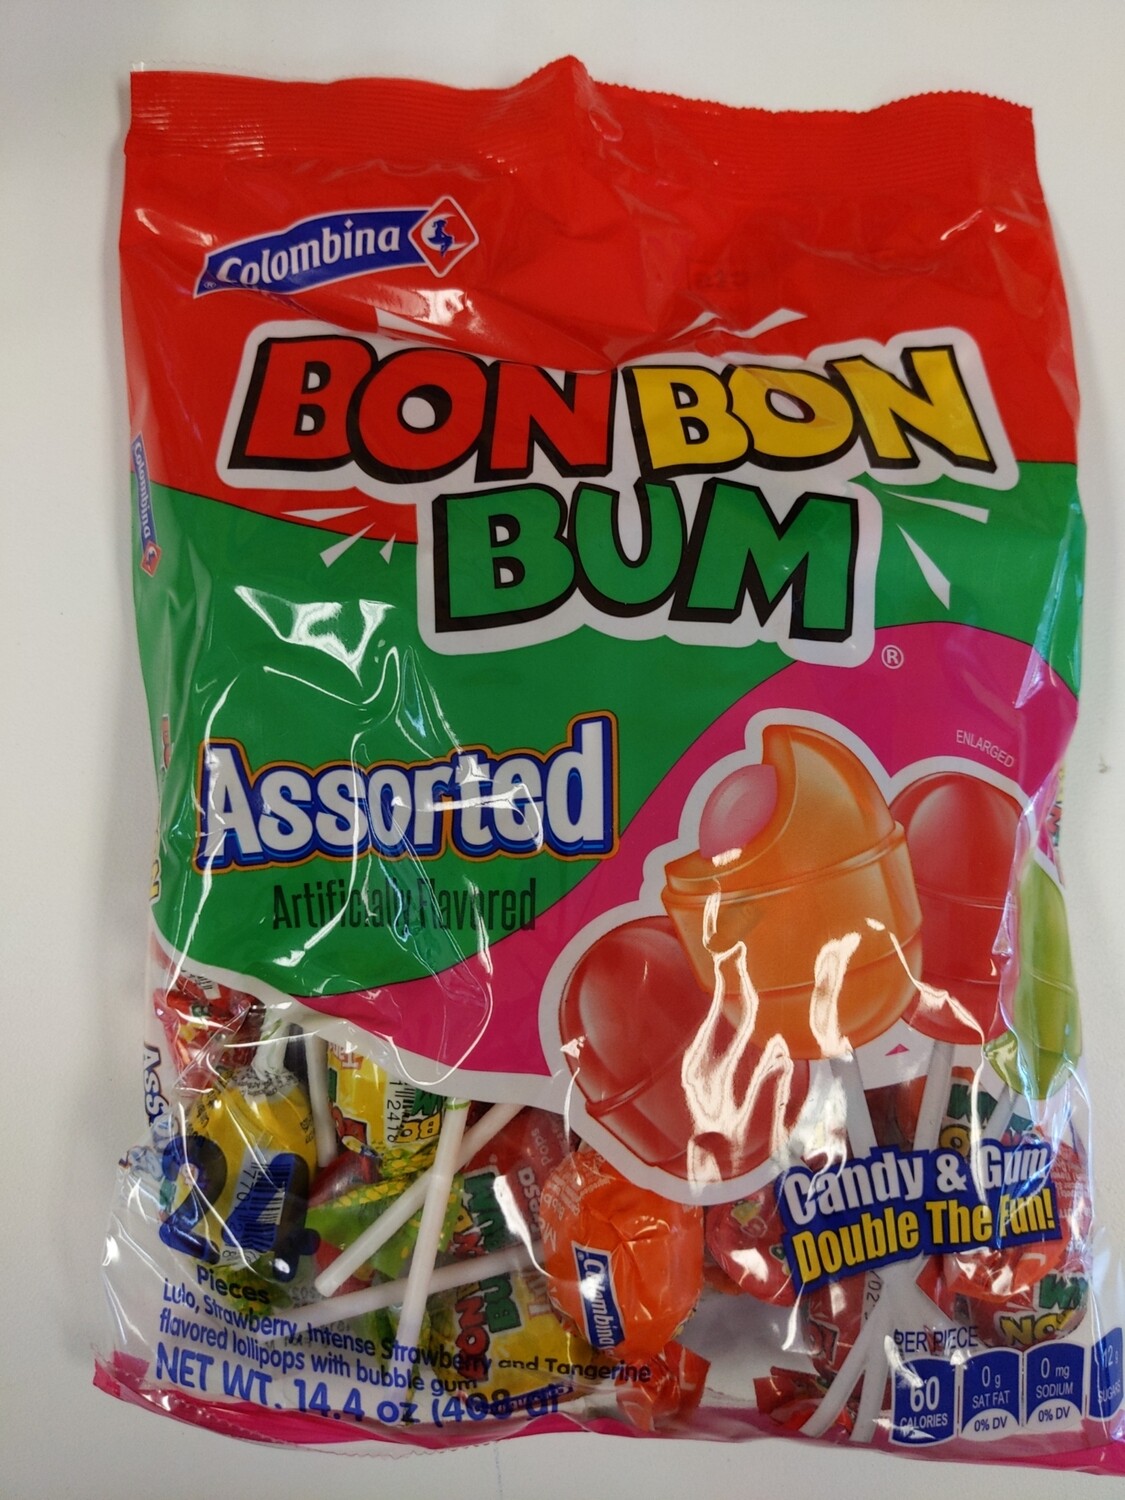 Bonbon bum bag